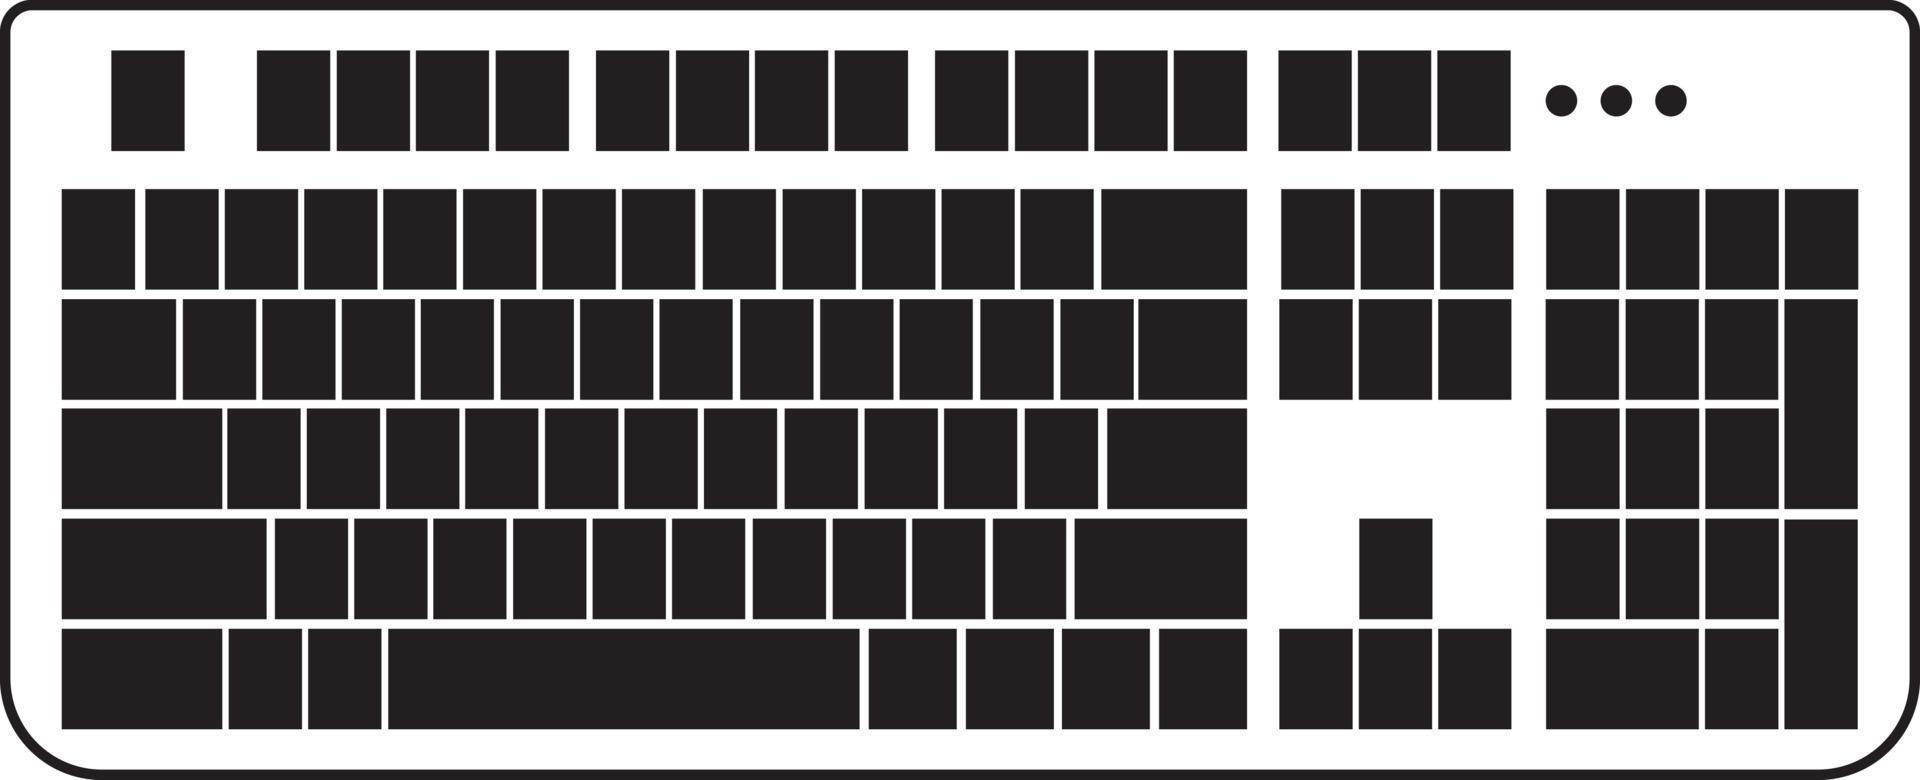 tom pc tangentbord ikon illustration kommunikation skriver skrivning elektronisk teknologi Utrustning vektor